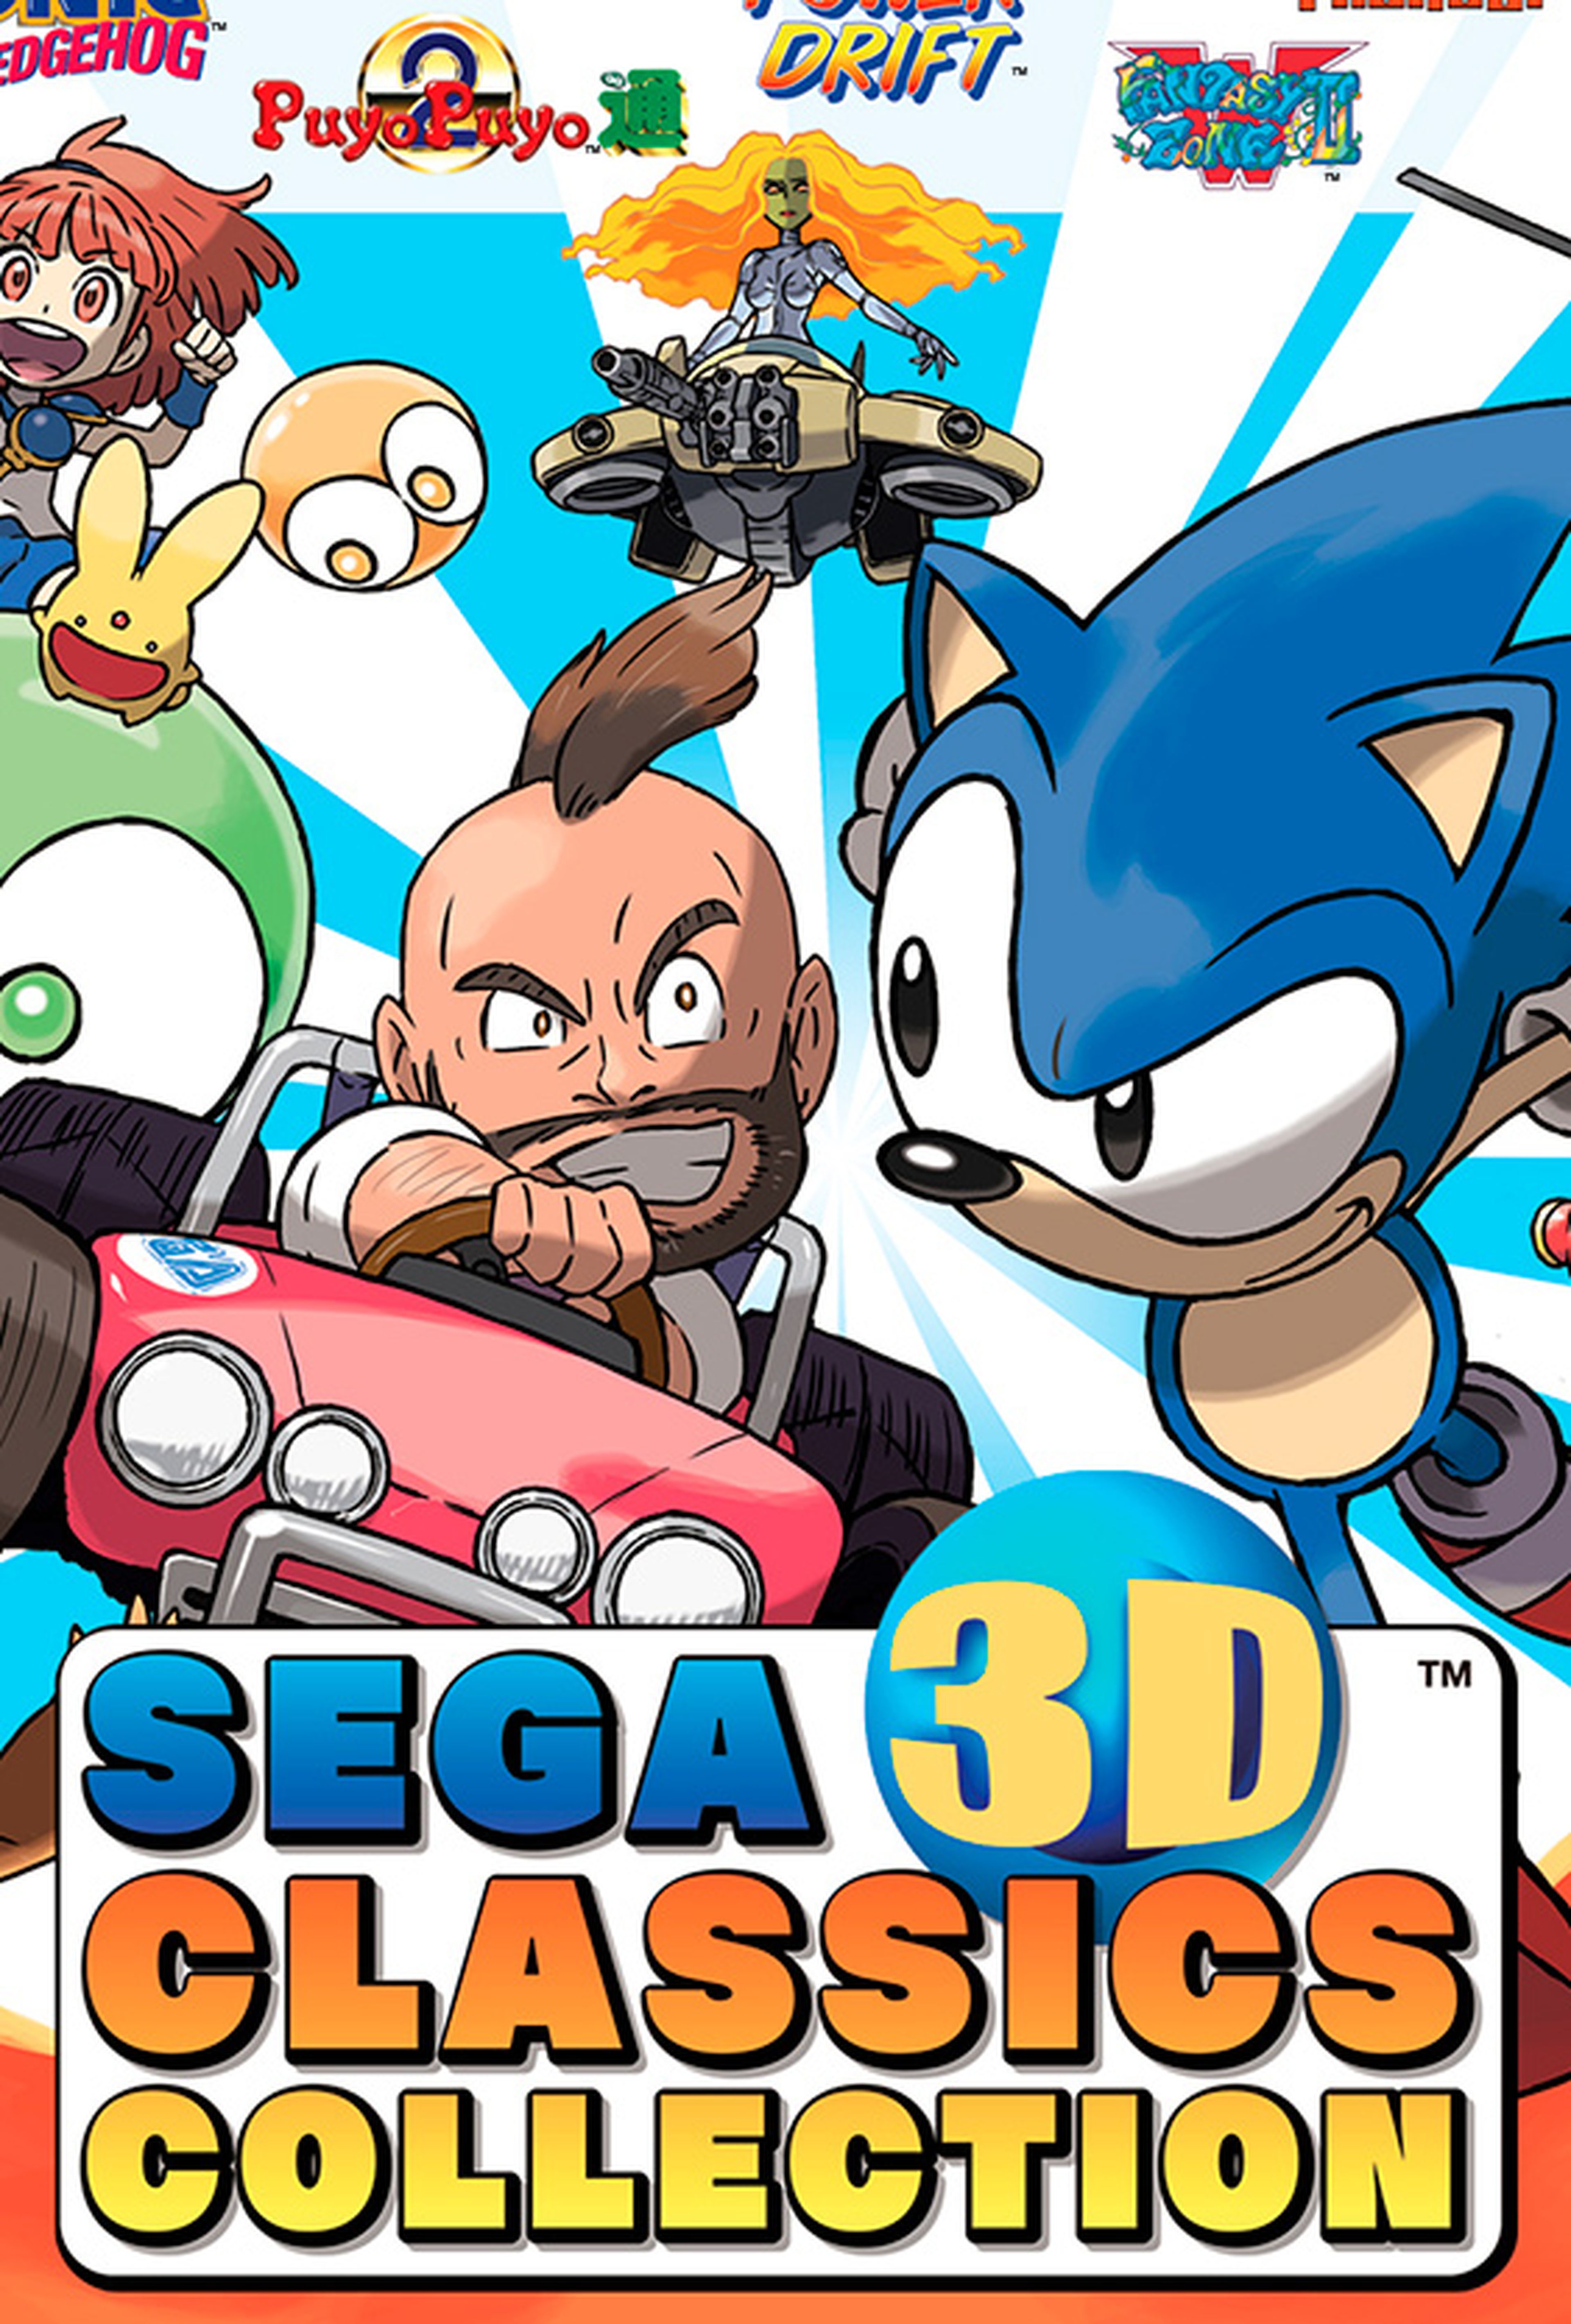 SEGA 3D Classics Collection - Carátula